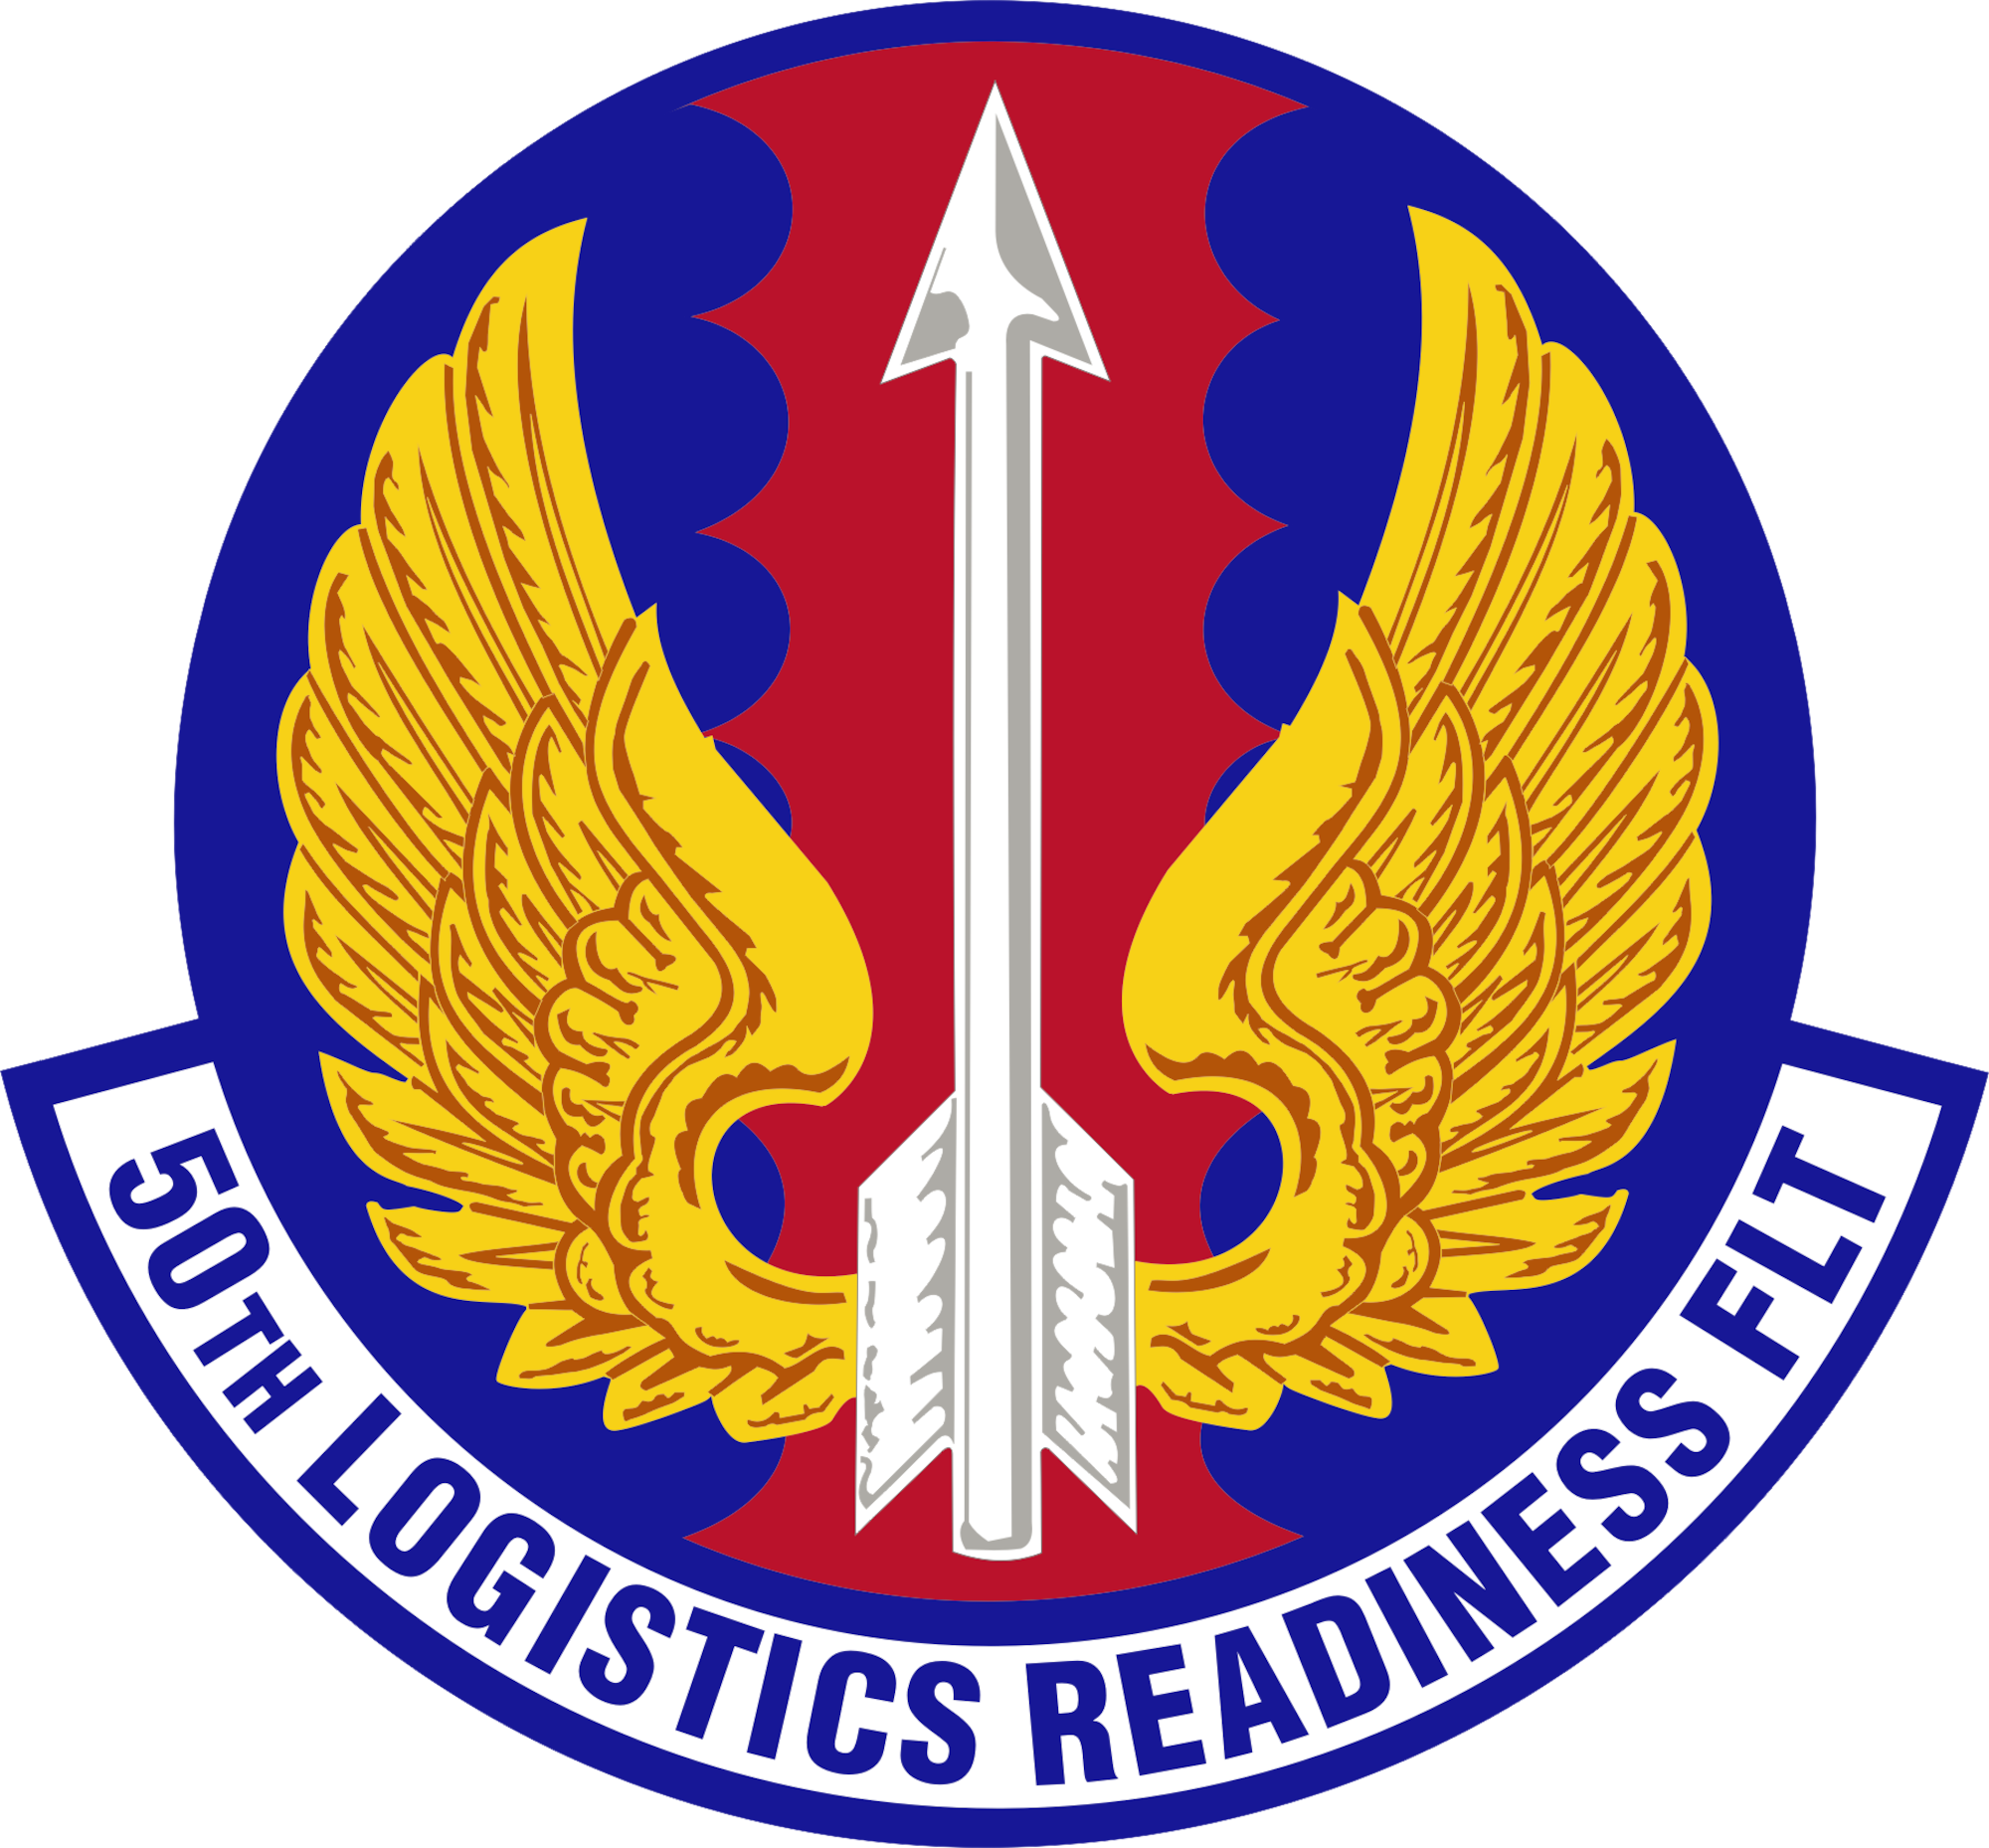 50th Logistics Readiness Flight